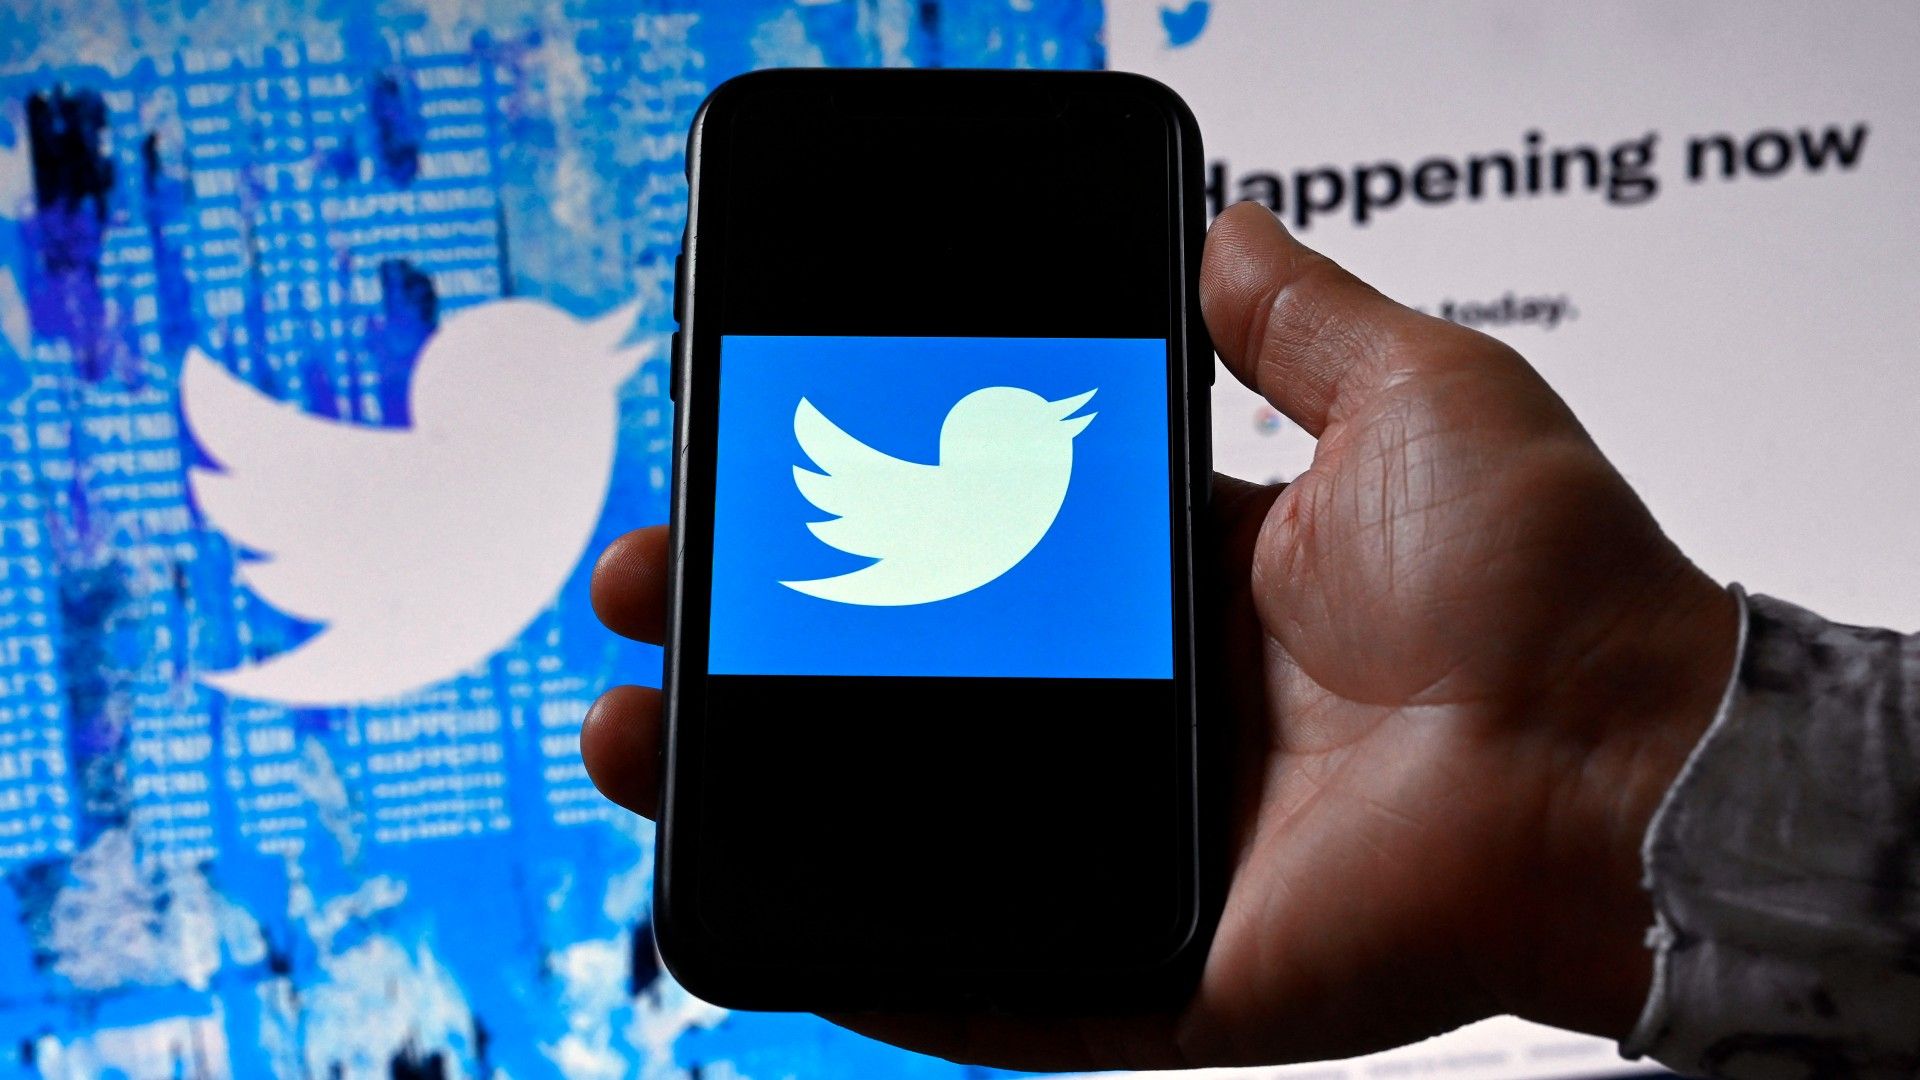 Una persona muestra el logo de Twitter en un móvil con un fondo que muestra, también, el logo de Twitter.